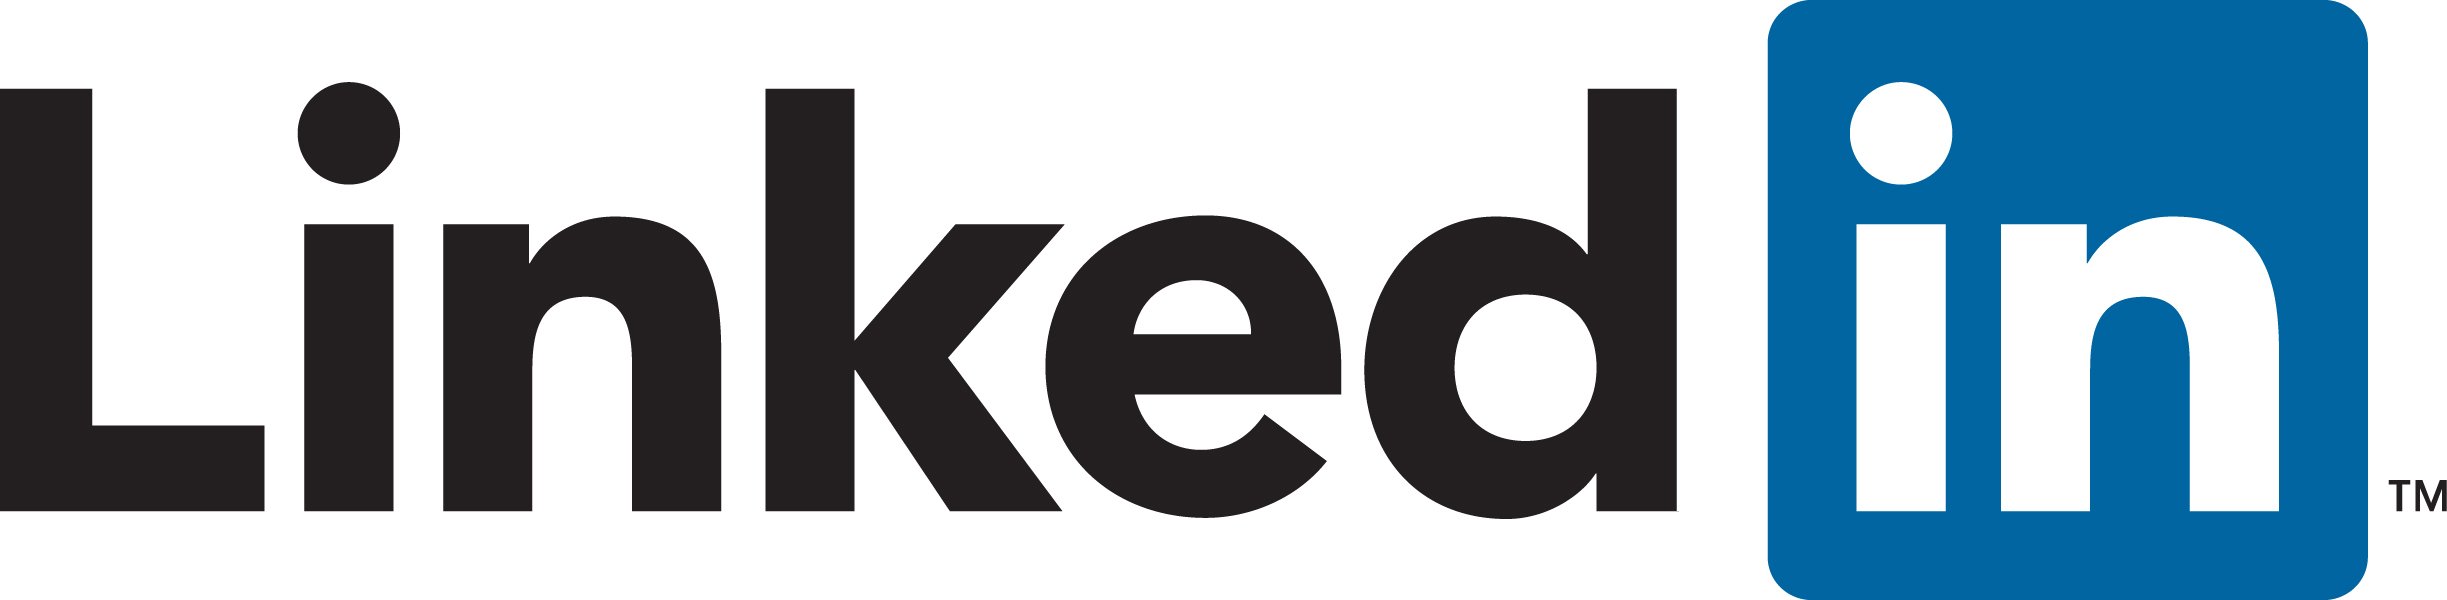 Logo Linkedin 2018.jpg